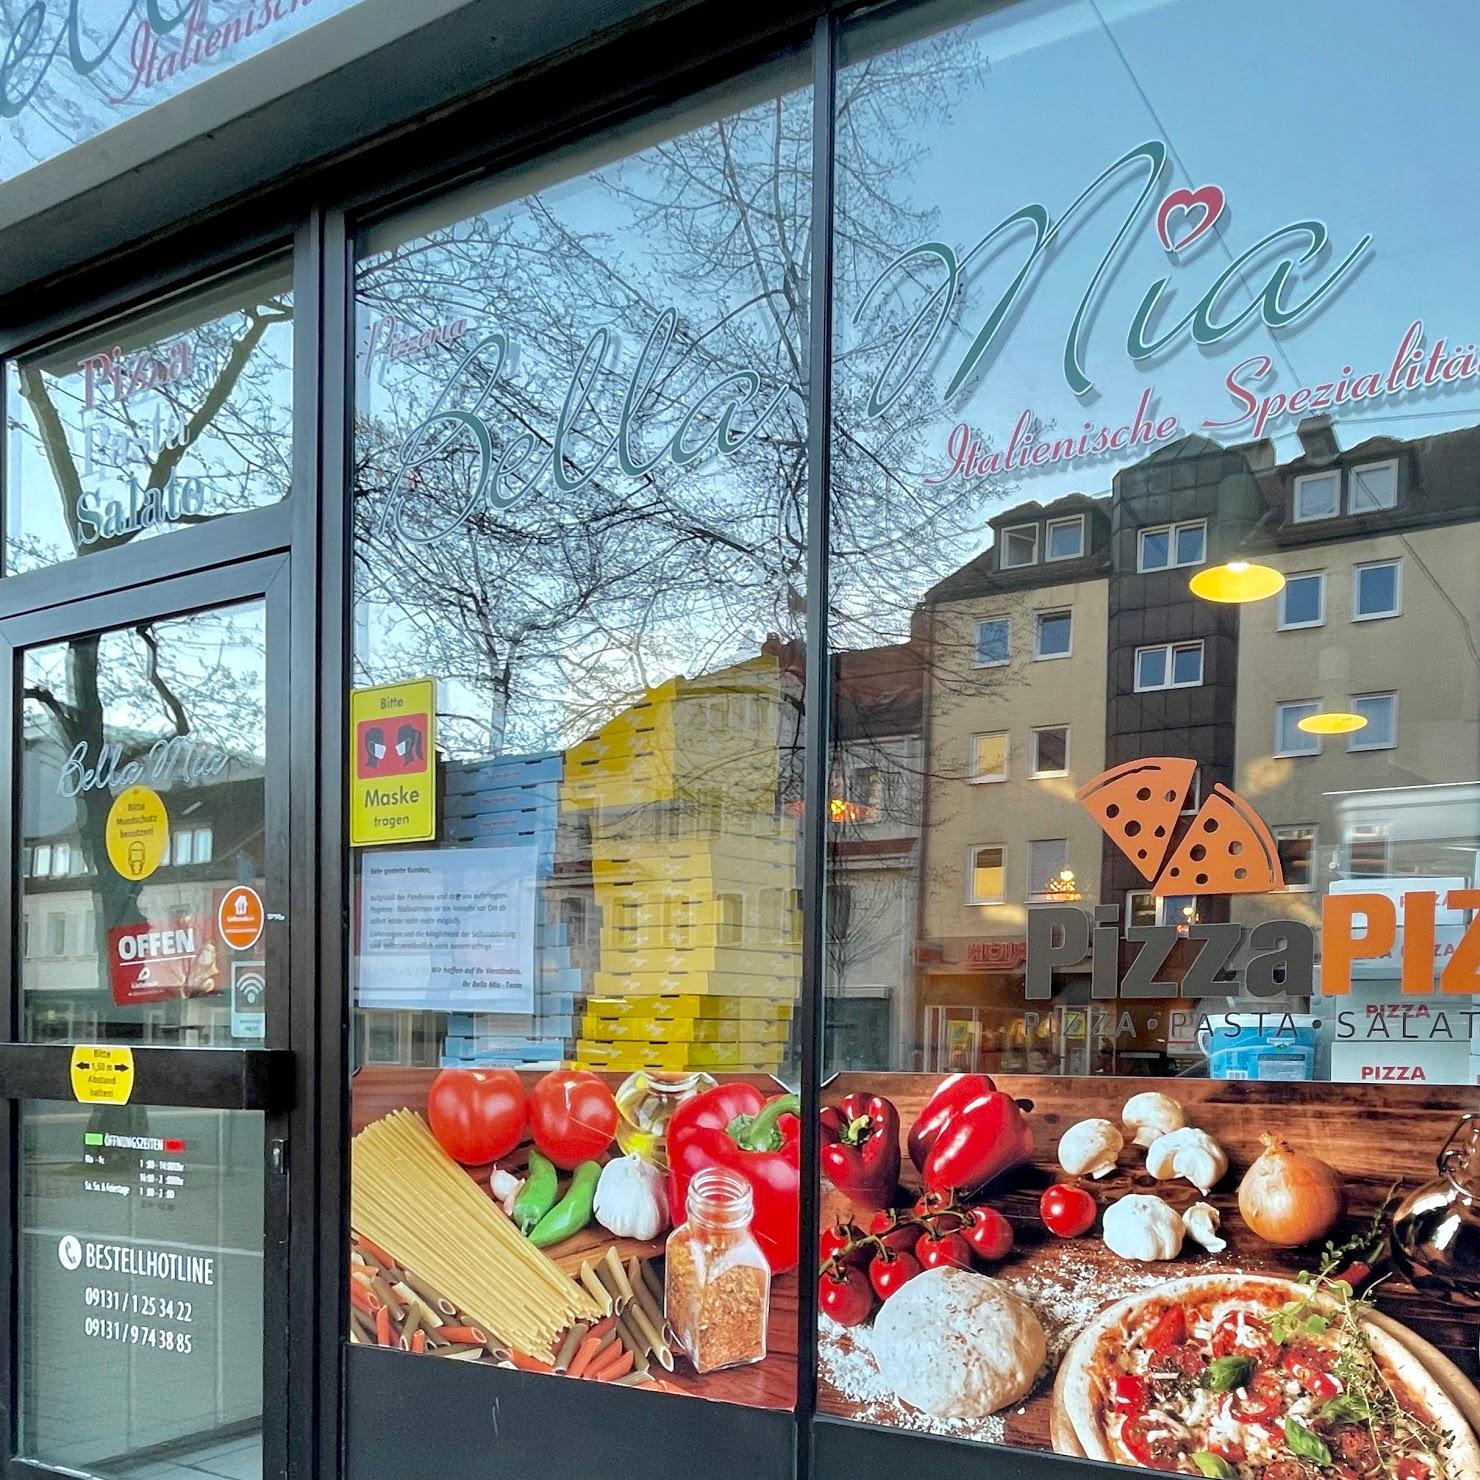 Pizza Bella Mia in Erlangen